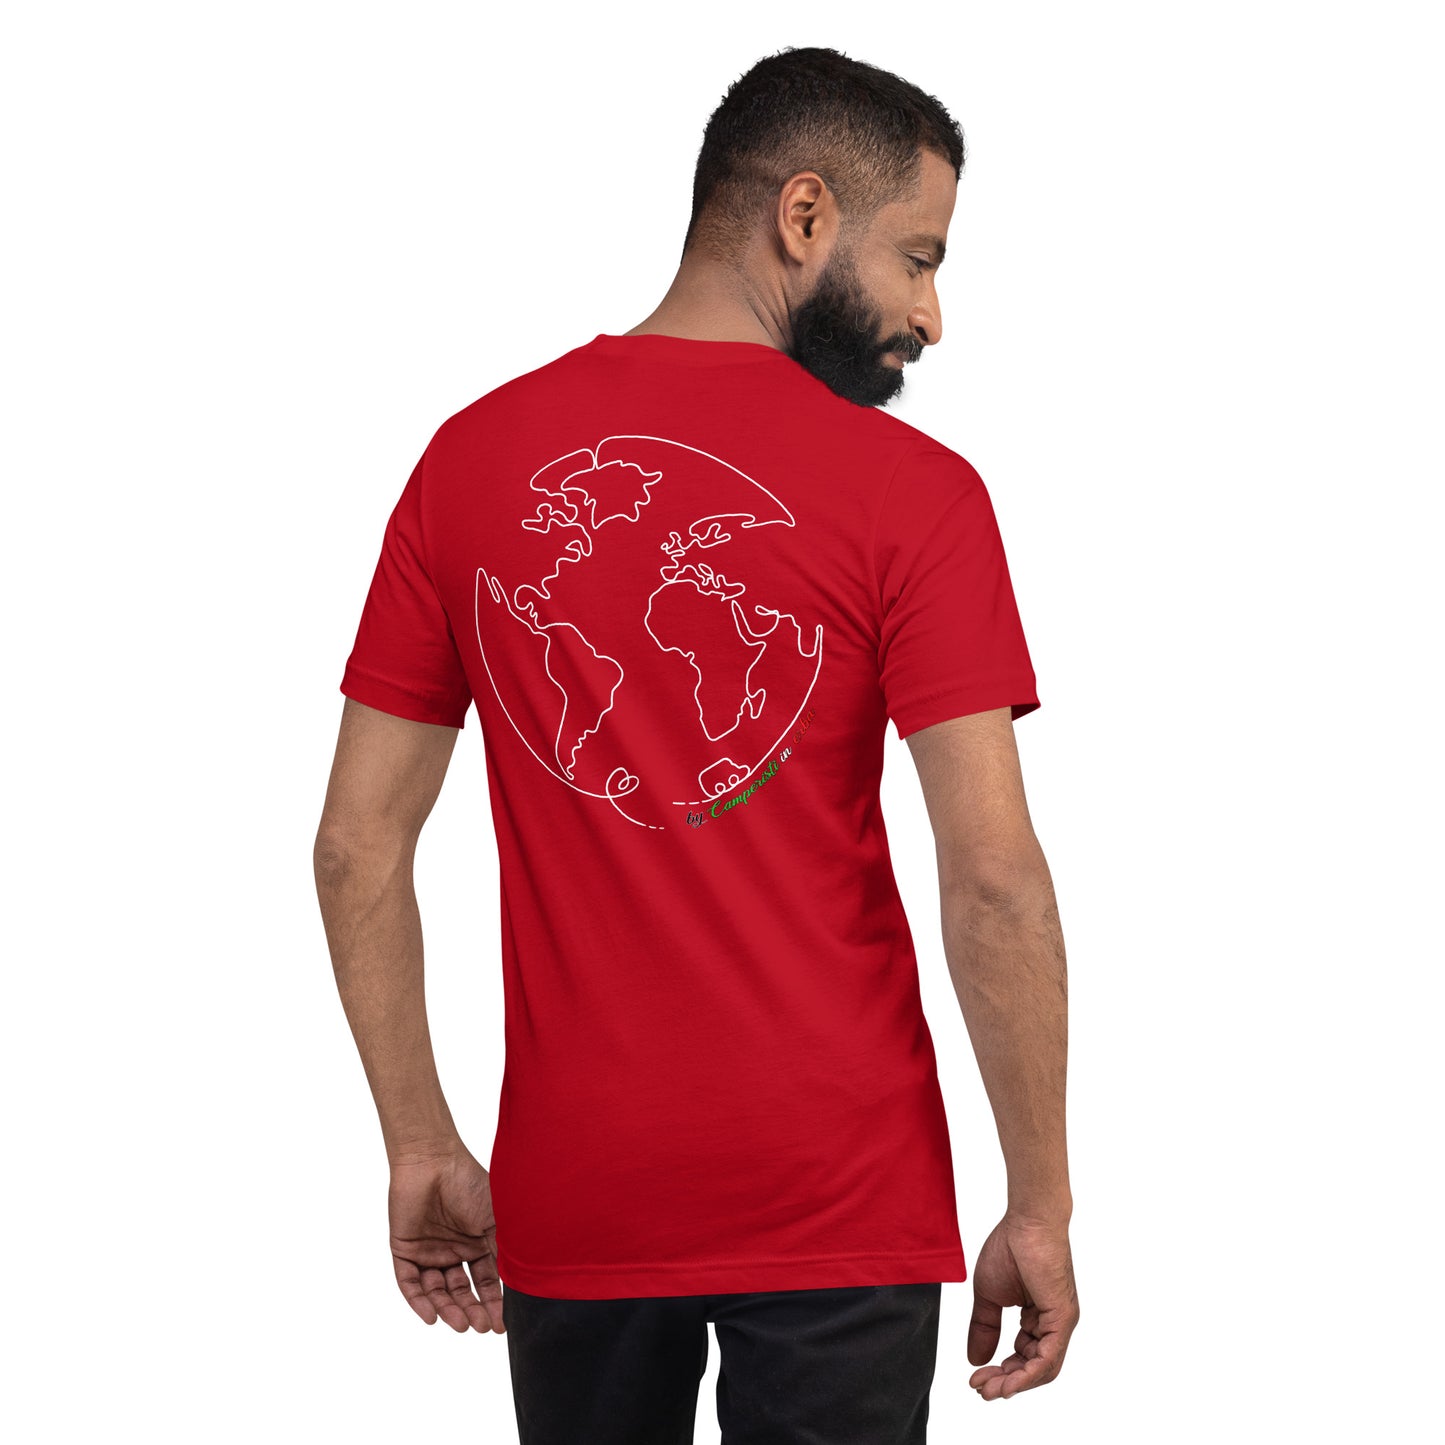 Maglietta t-shirt Il giro del mondo in camper disegno bianco